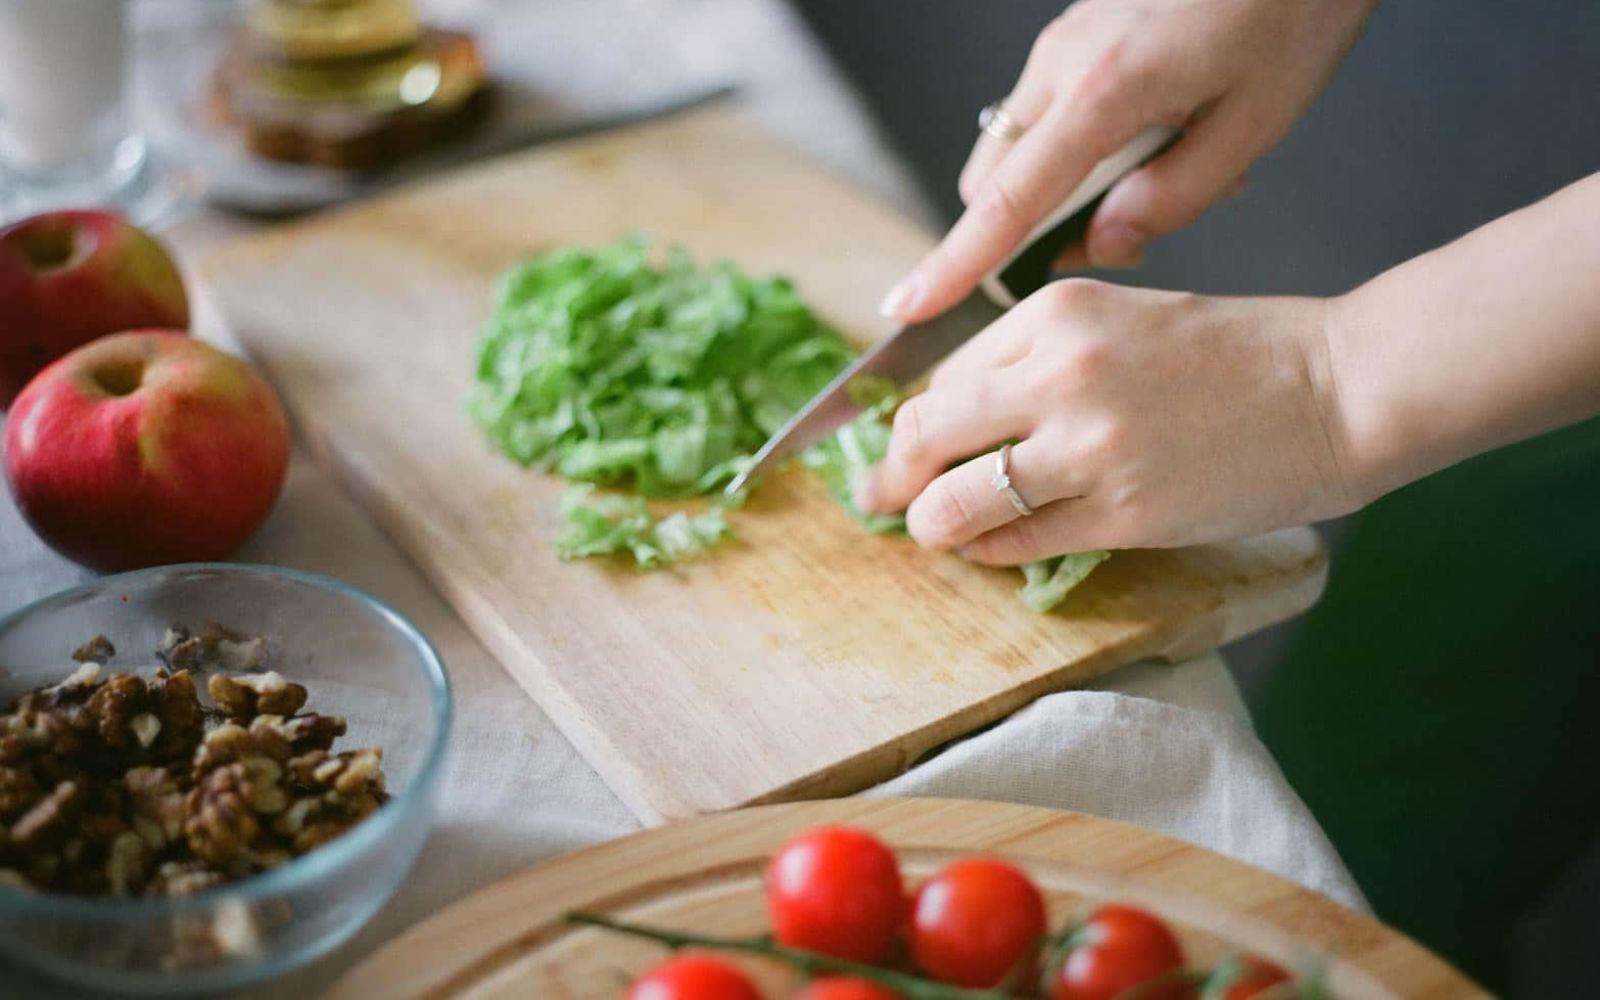 Abnehmkurse: Hände zerkleinern mit Messer Salat, Tomaten liegen daneben.